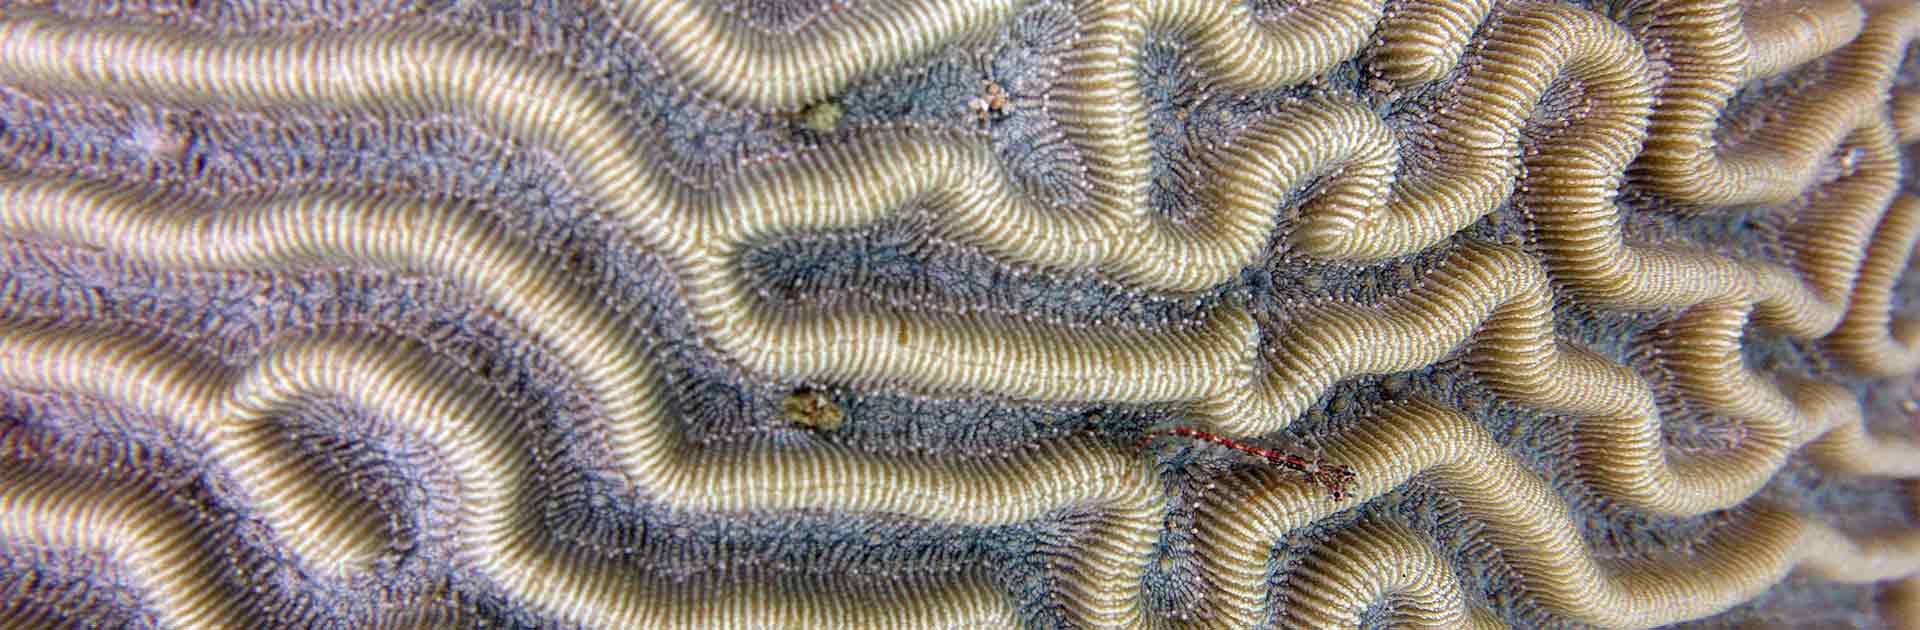 Pseudoliporia strigosa coral colony